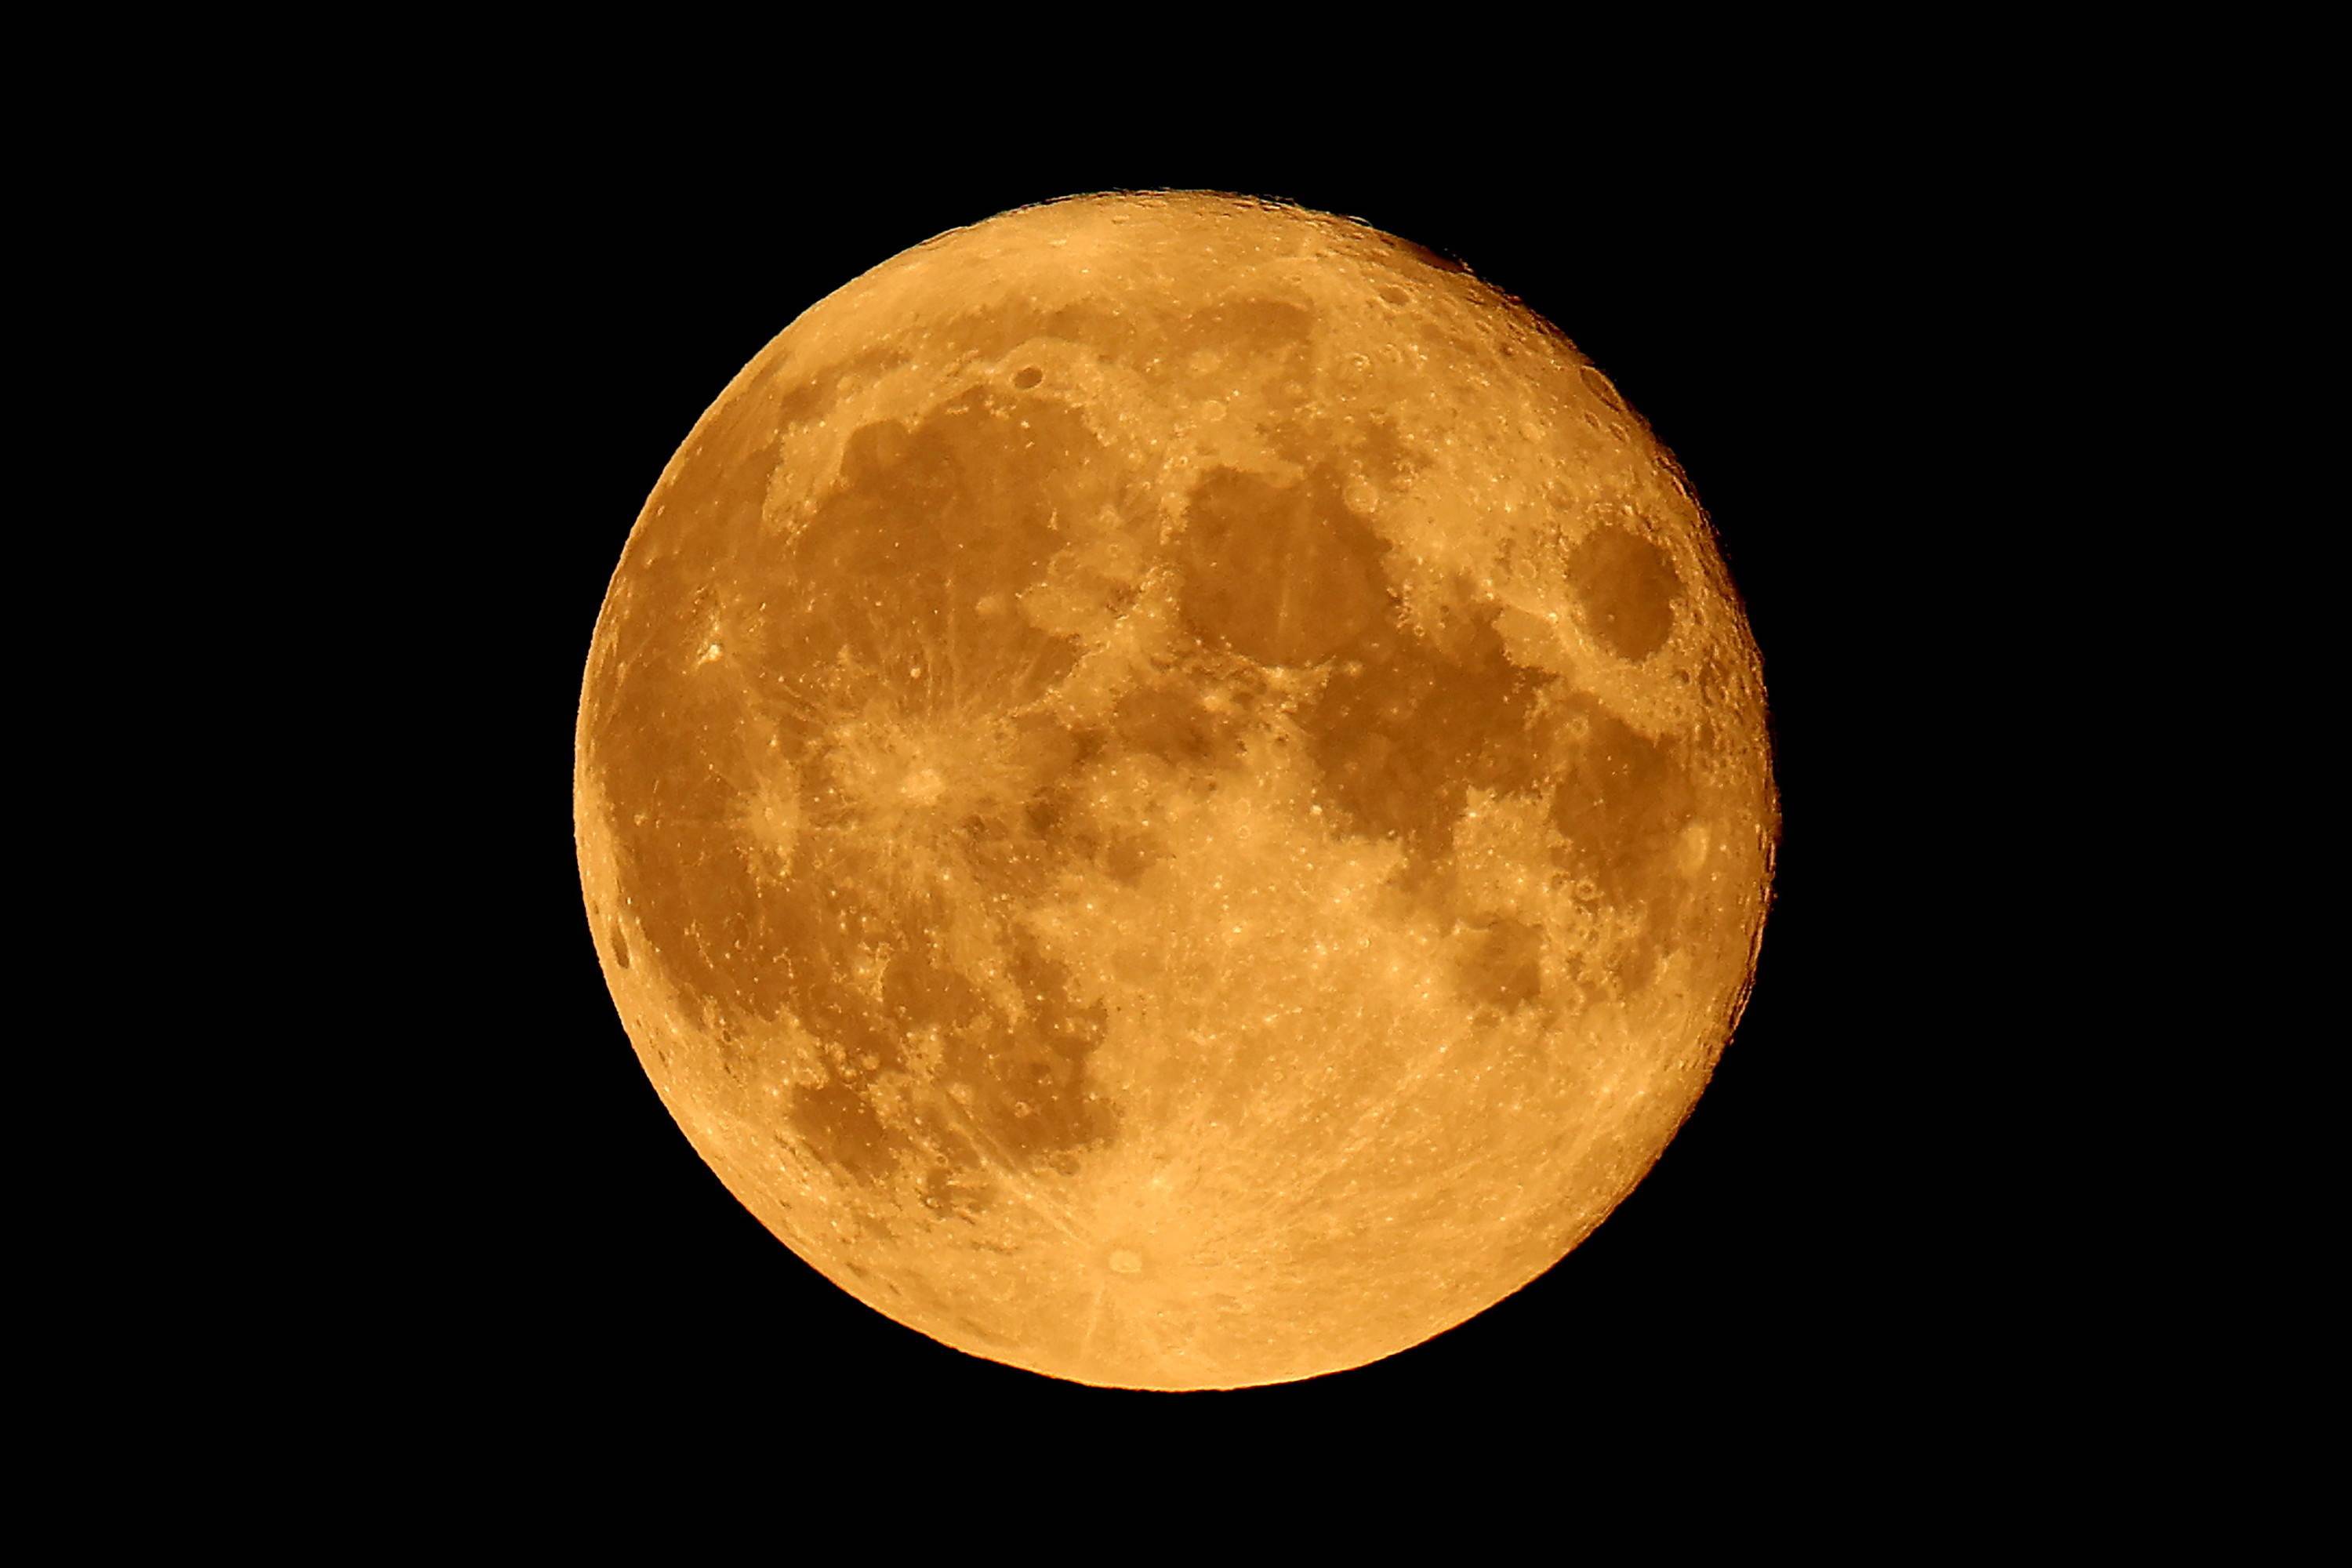 这是7月25日凌晨在波兰克拉科夫拍摄的满月